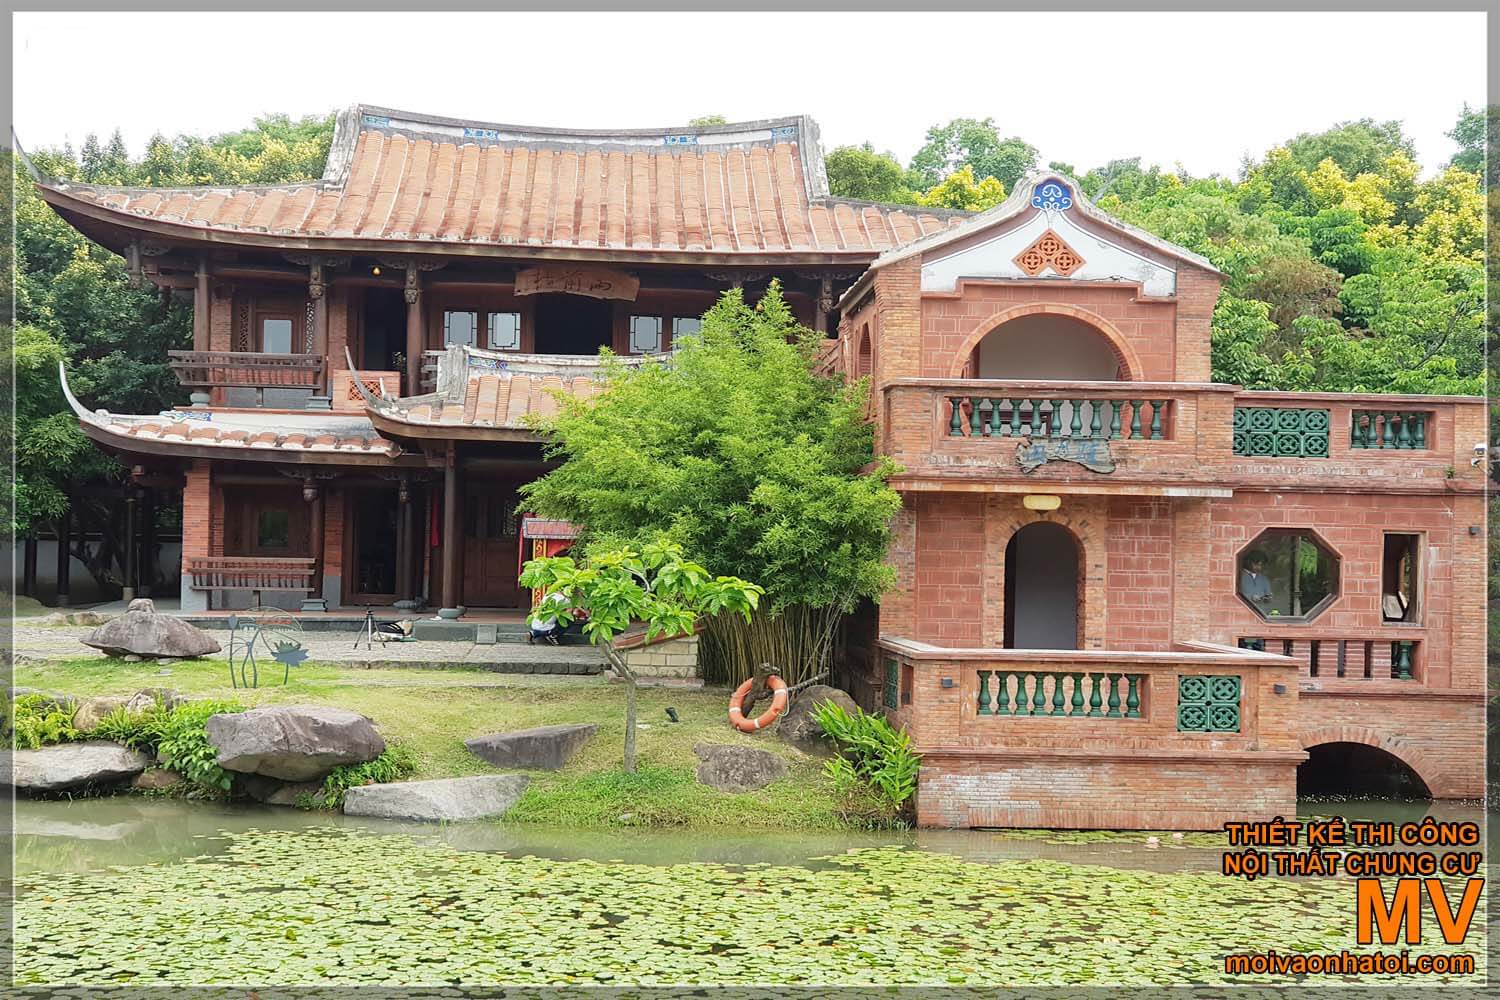 चीनी प्राचीन घर मॉडल